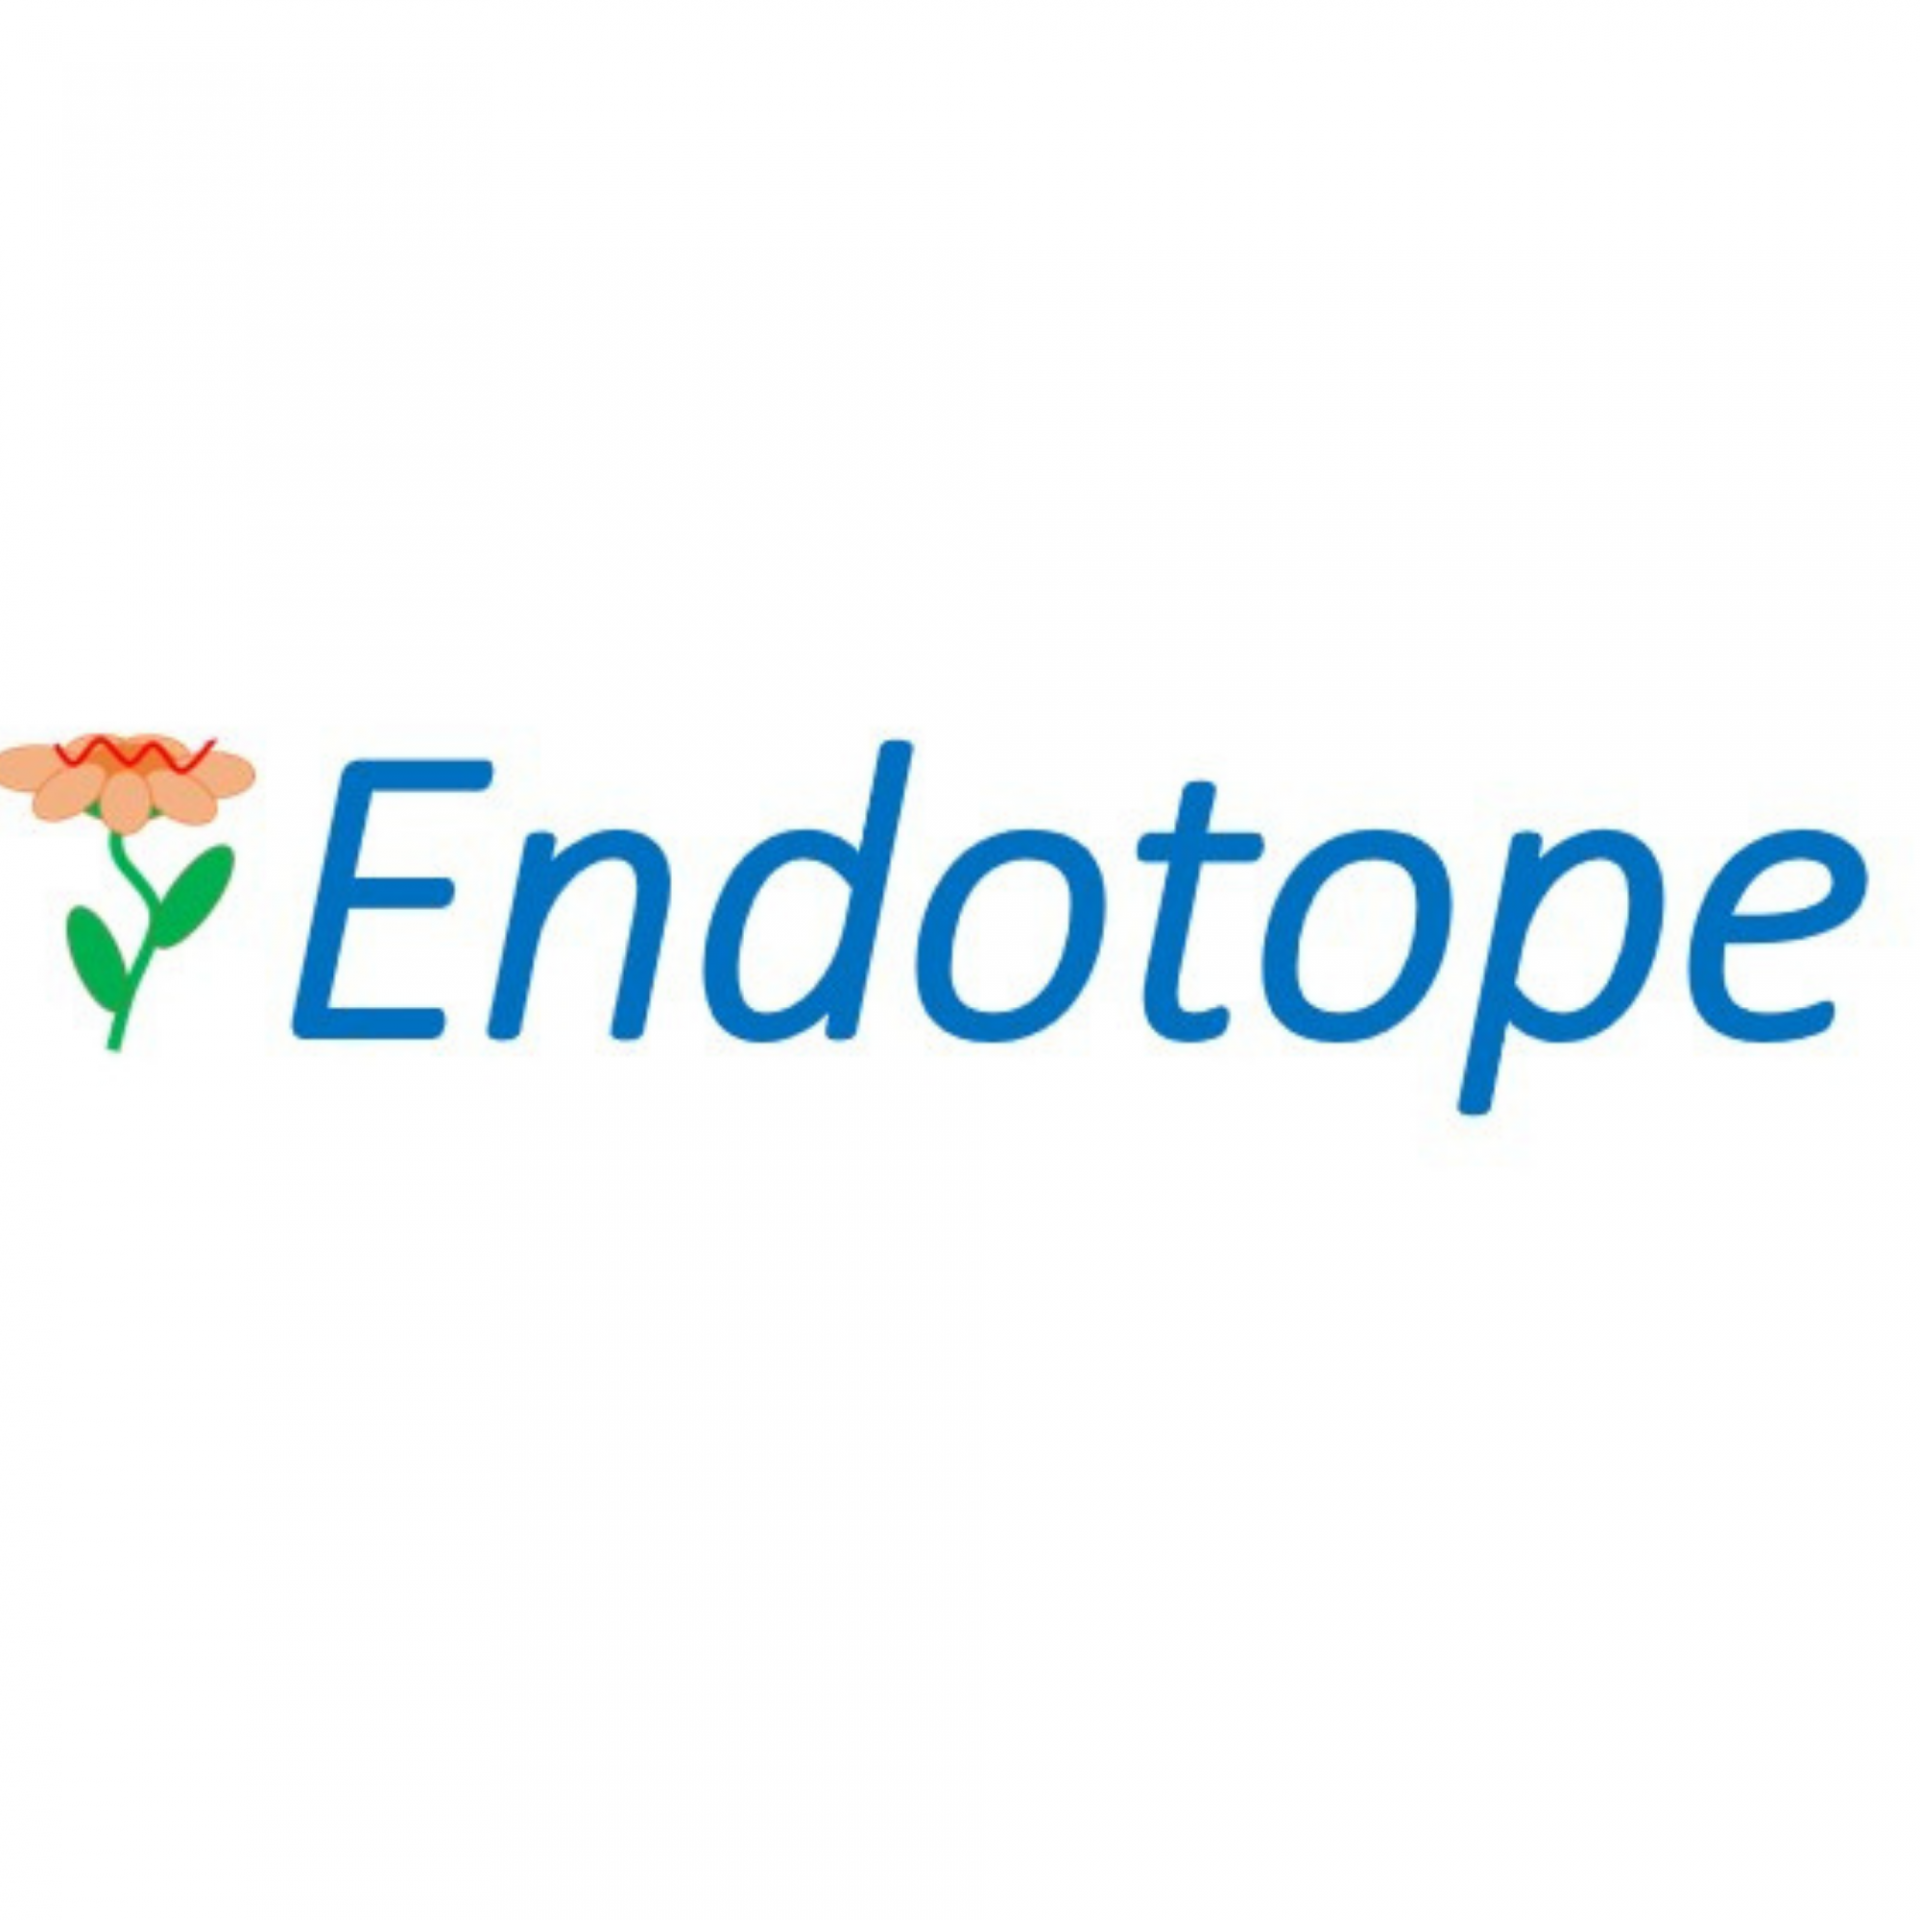 Endotope